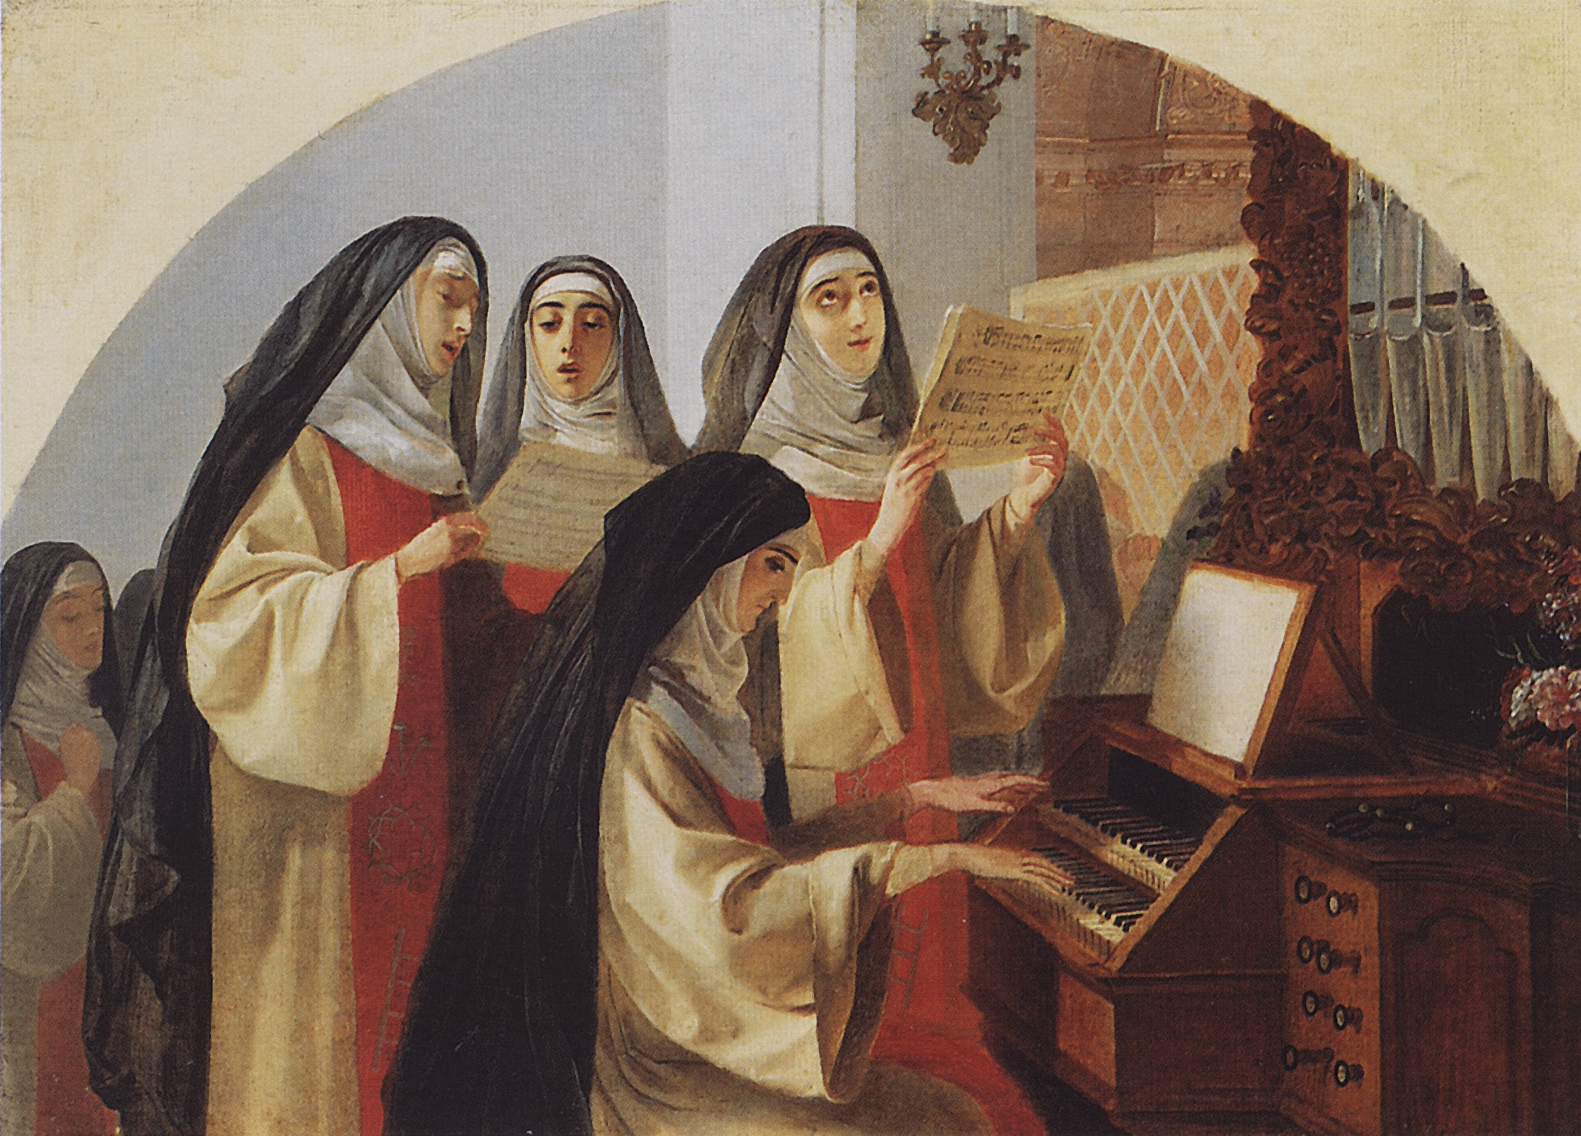 Брюллов К.. Монахини монастыря Святого Сердца в Риме, поющие у органа. 1849